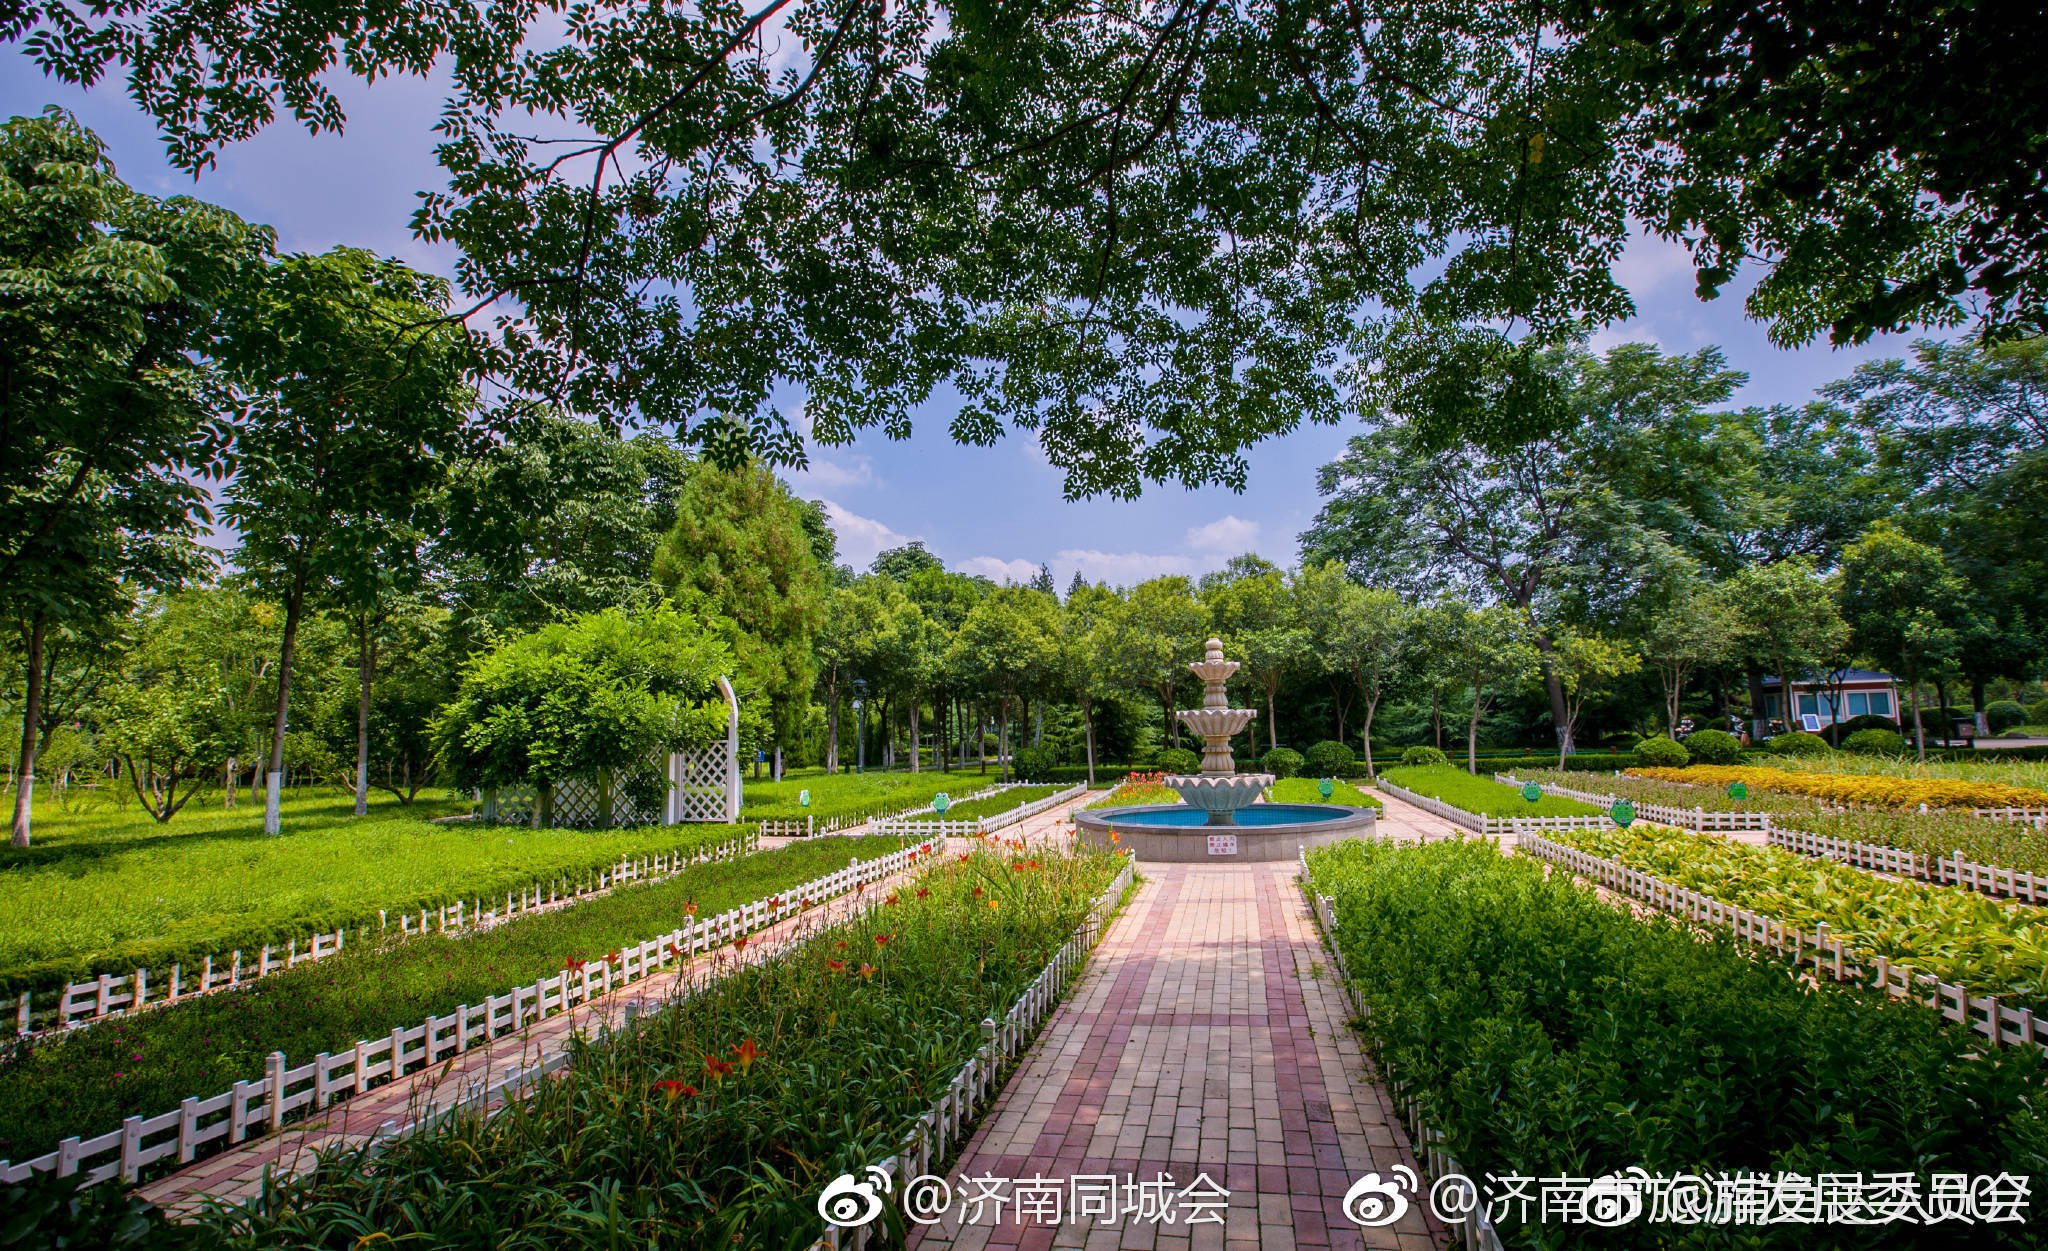 苗圃公园环境幽静,植被茂盛,是济南市区西部市